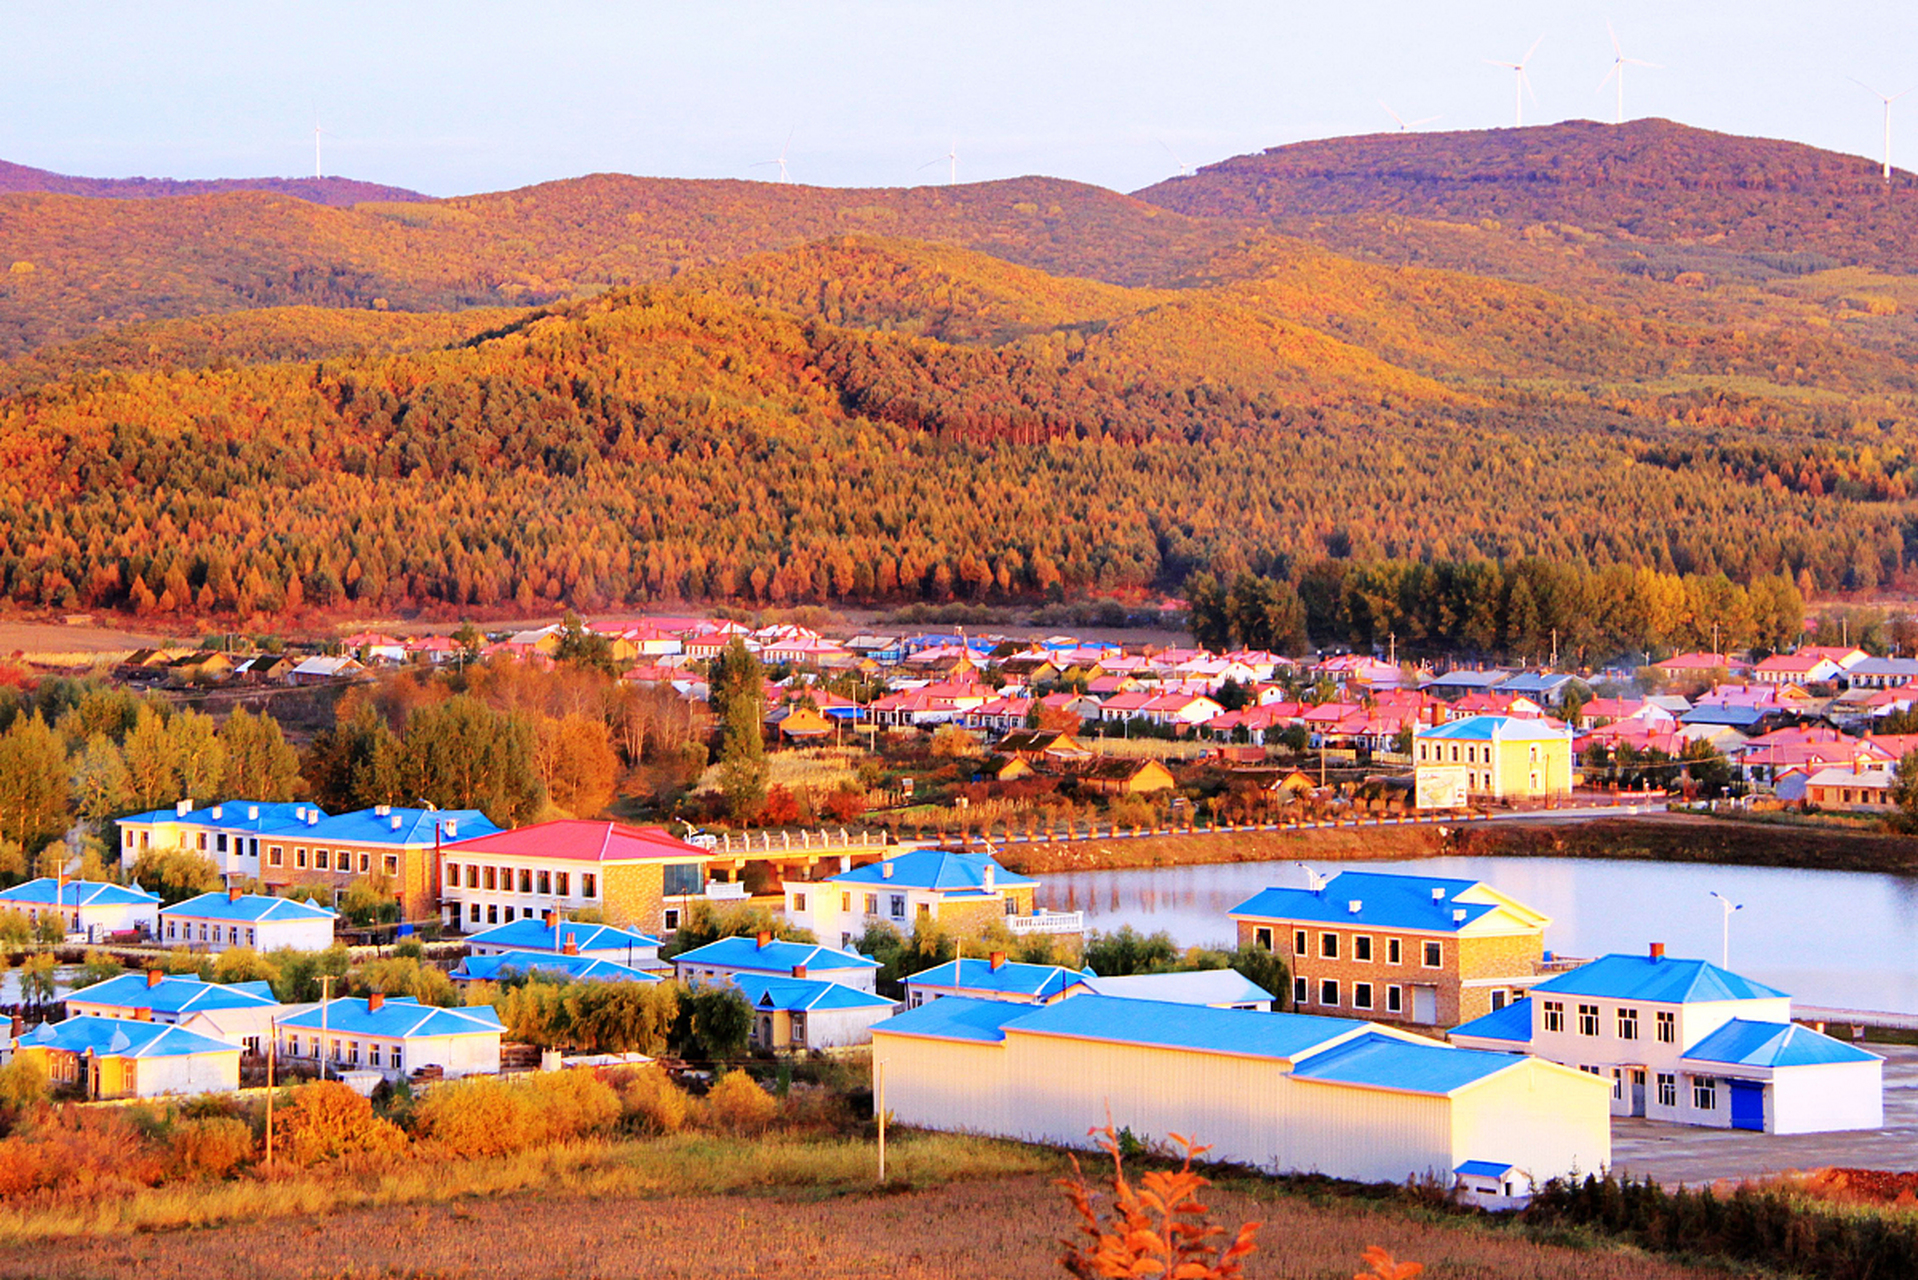 内蒙古柴河月亮小镇位于扎兰屯市区西南175公里处,由蒙,汉,鄂伦春